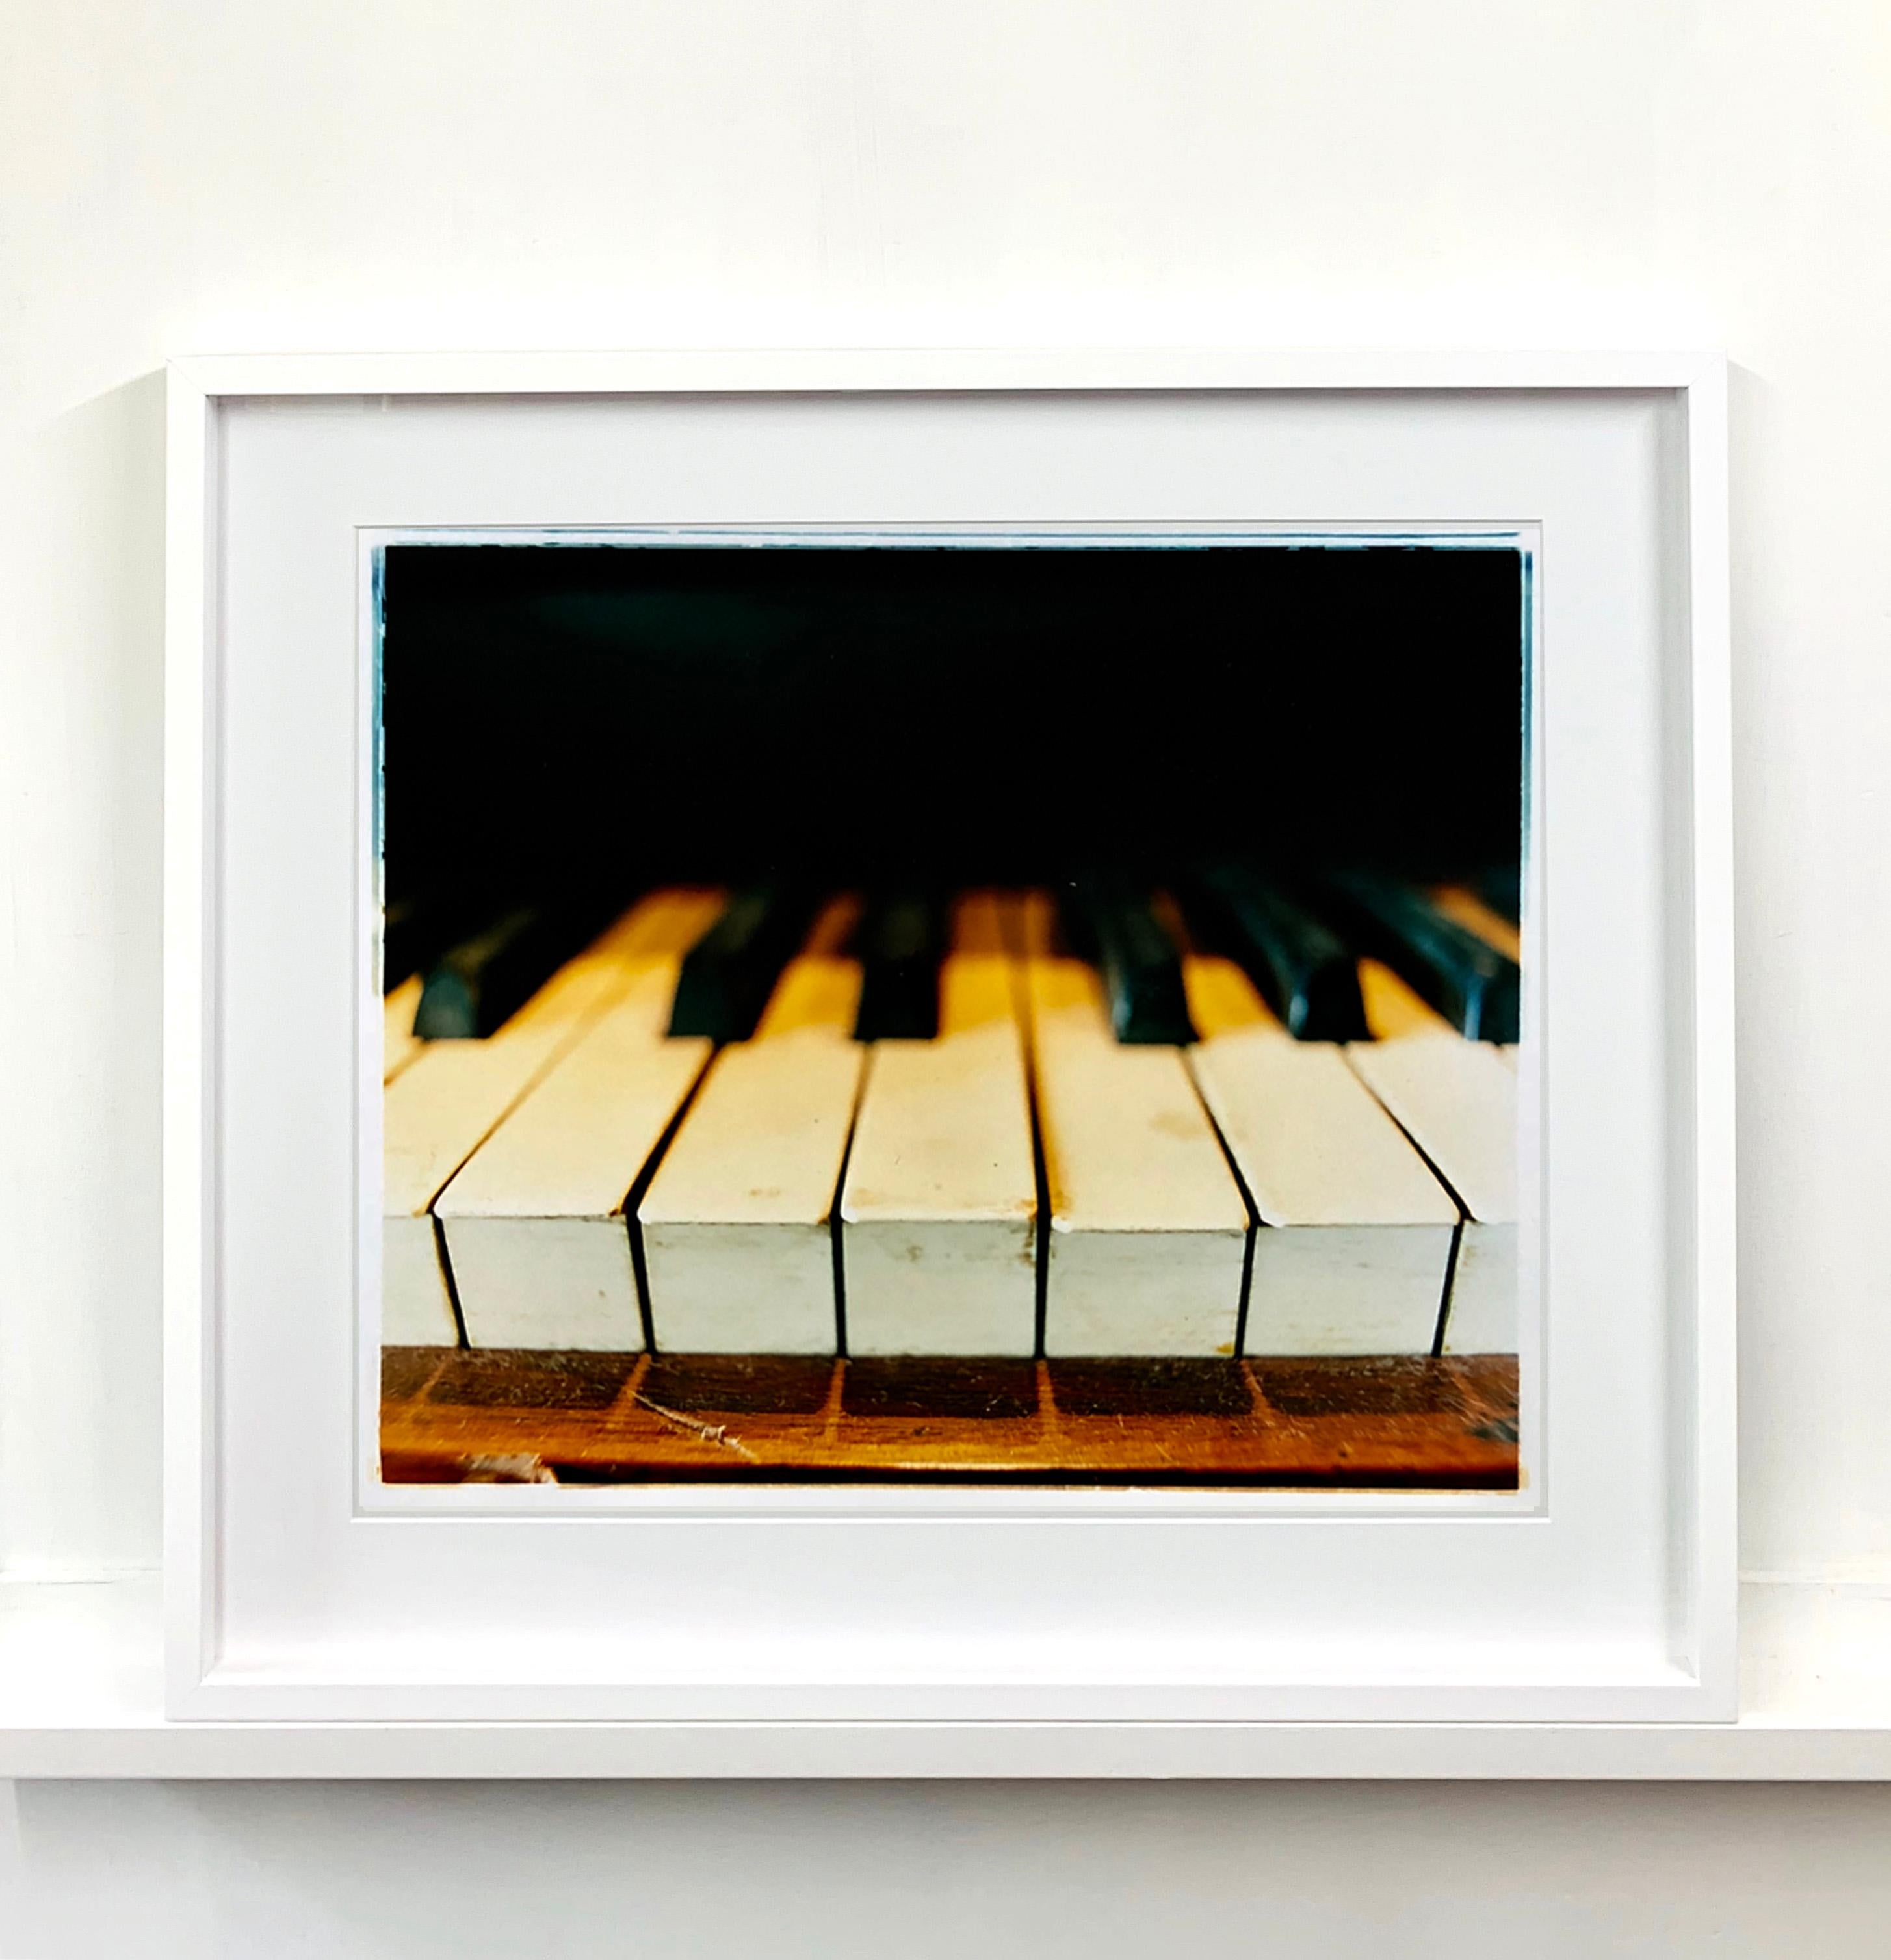 Keys de piano, Stockton-on-Tees - Photographie en couleur de musique - Contemporain Print par Richard Heeps